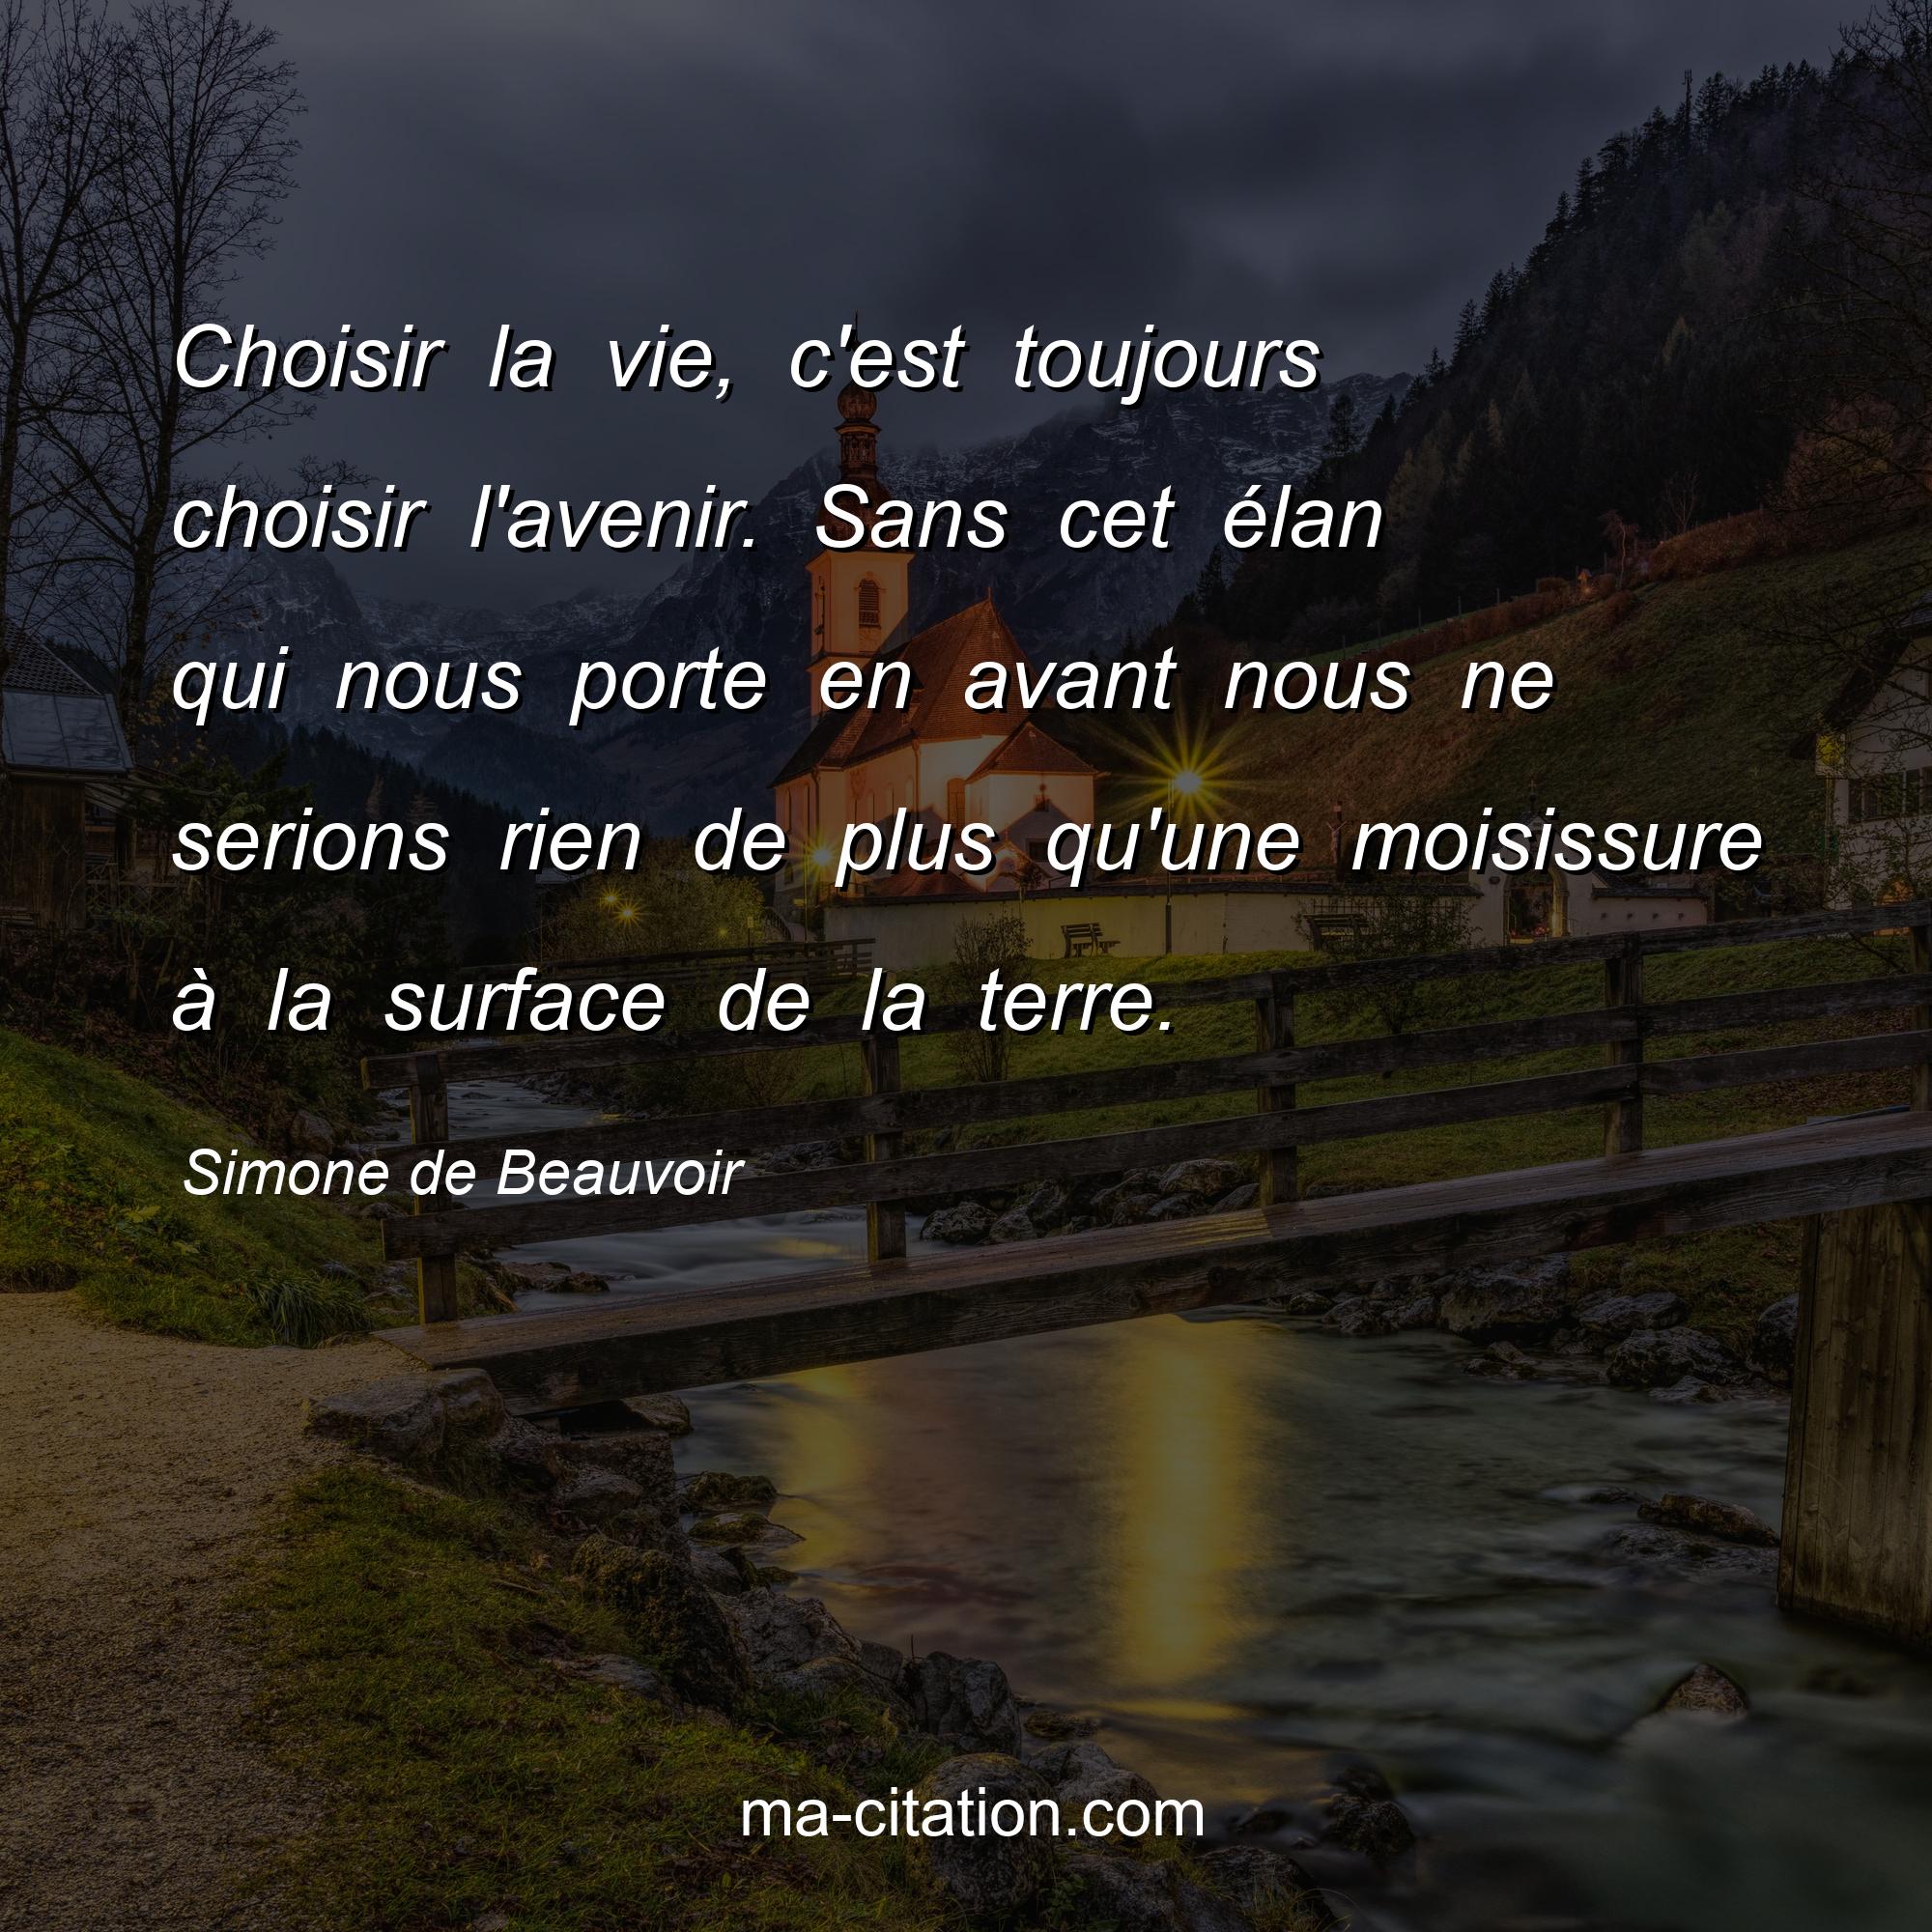 Simone de Beauvoir : Choisir la vie, c'est toujours choisir l'avenir. Sans cet élan qui nous porte en avant nous ne serions rien de plus qu'une moisissure à la surface de la terre.